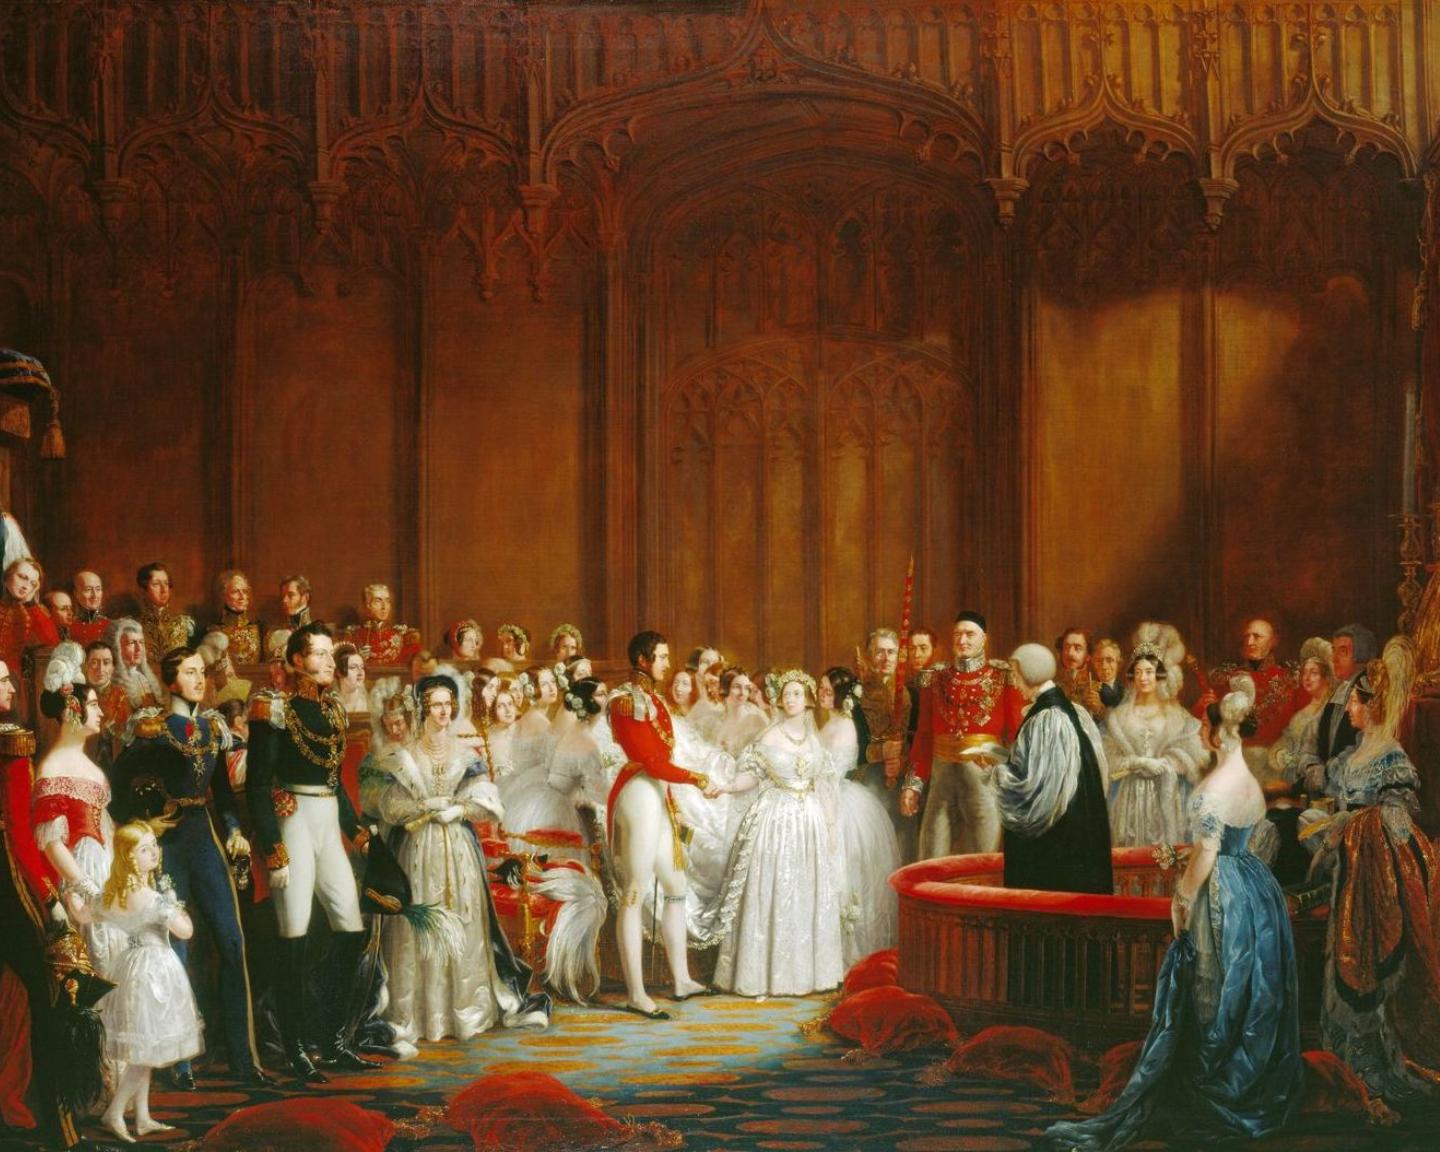 Дж. Хейтер. Свадьба Виктории и Альберта, 1840 год. 